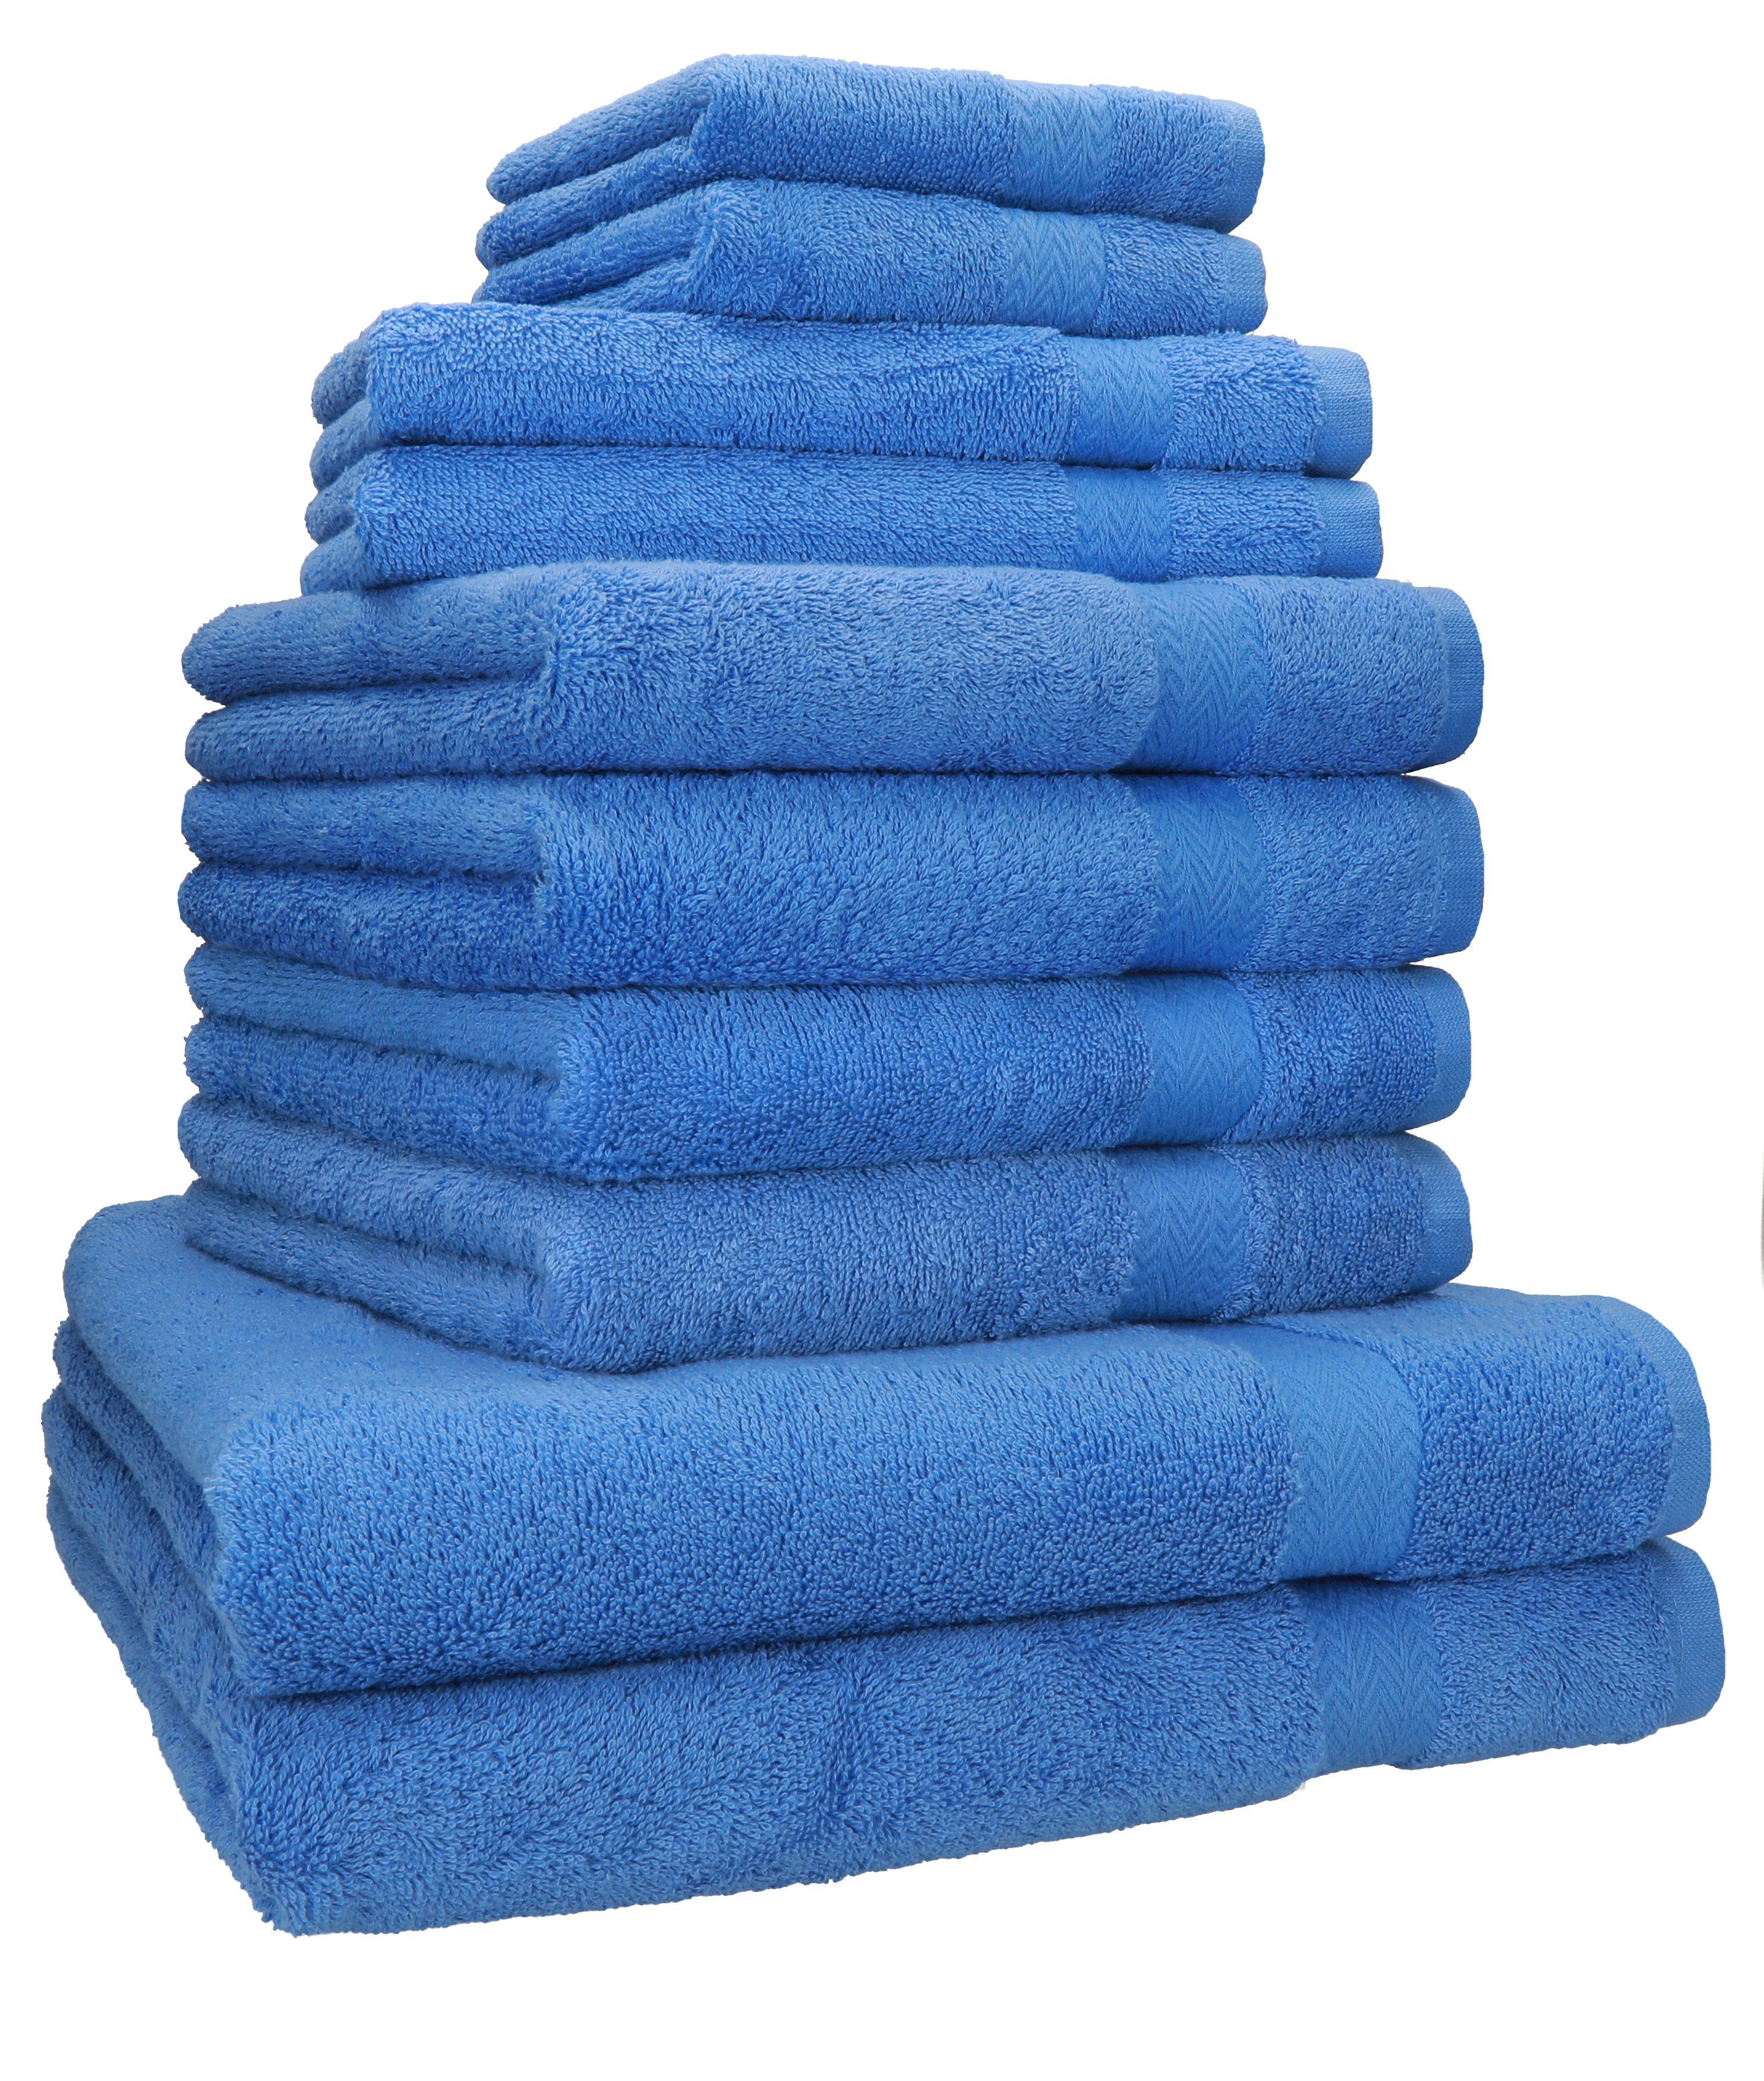 Betz Handtuch Set 10-TLG. Handtuch-Set Classic 100% Baumwolle 2 Duschtücher 4 Handtücher 2 Gästetücher 2 Seiftücher, 100% Baumwolle, (10-tlg) hellblau